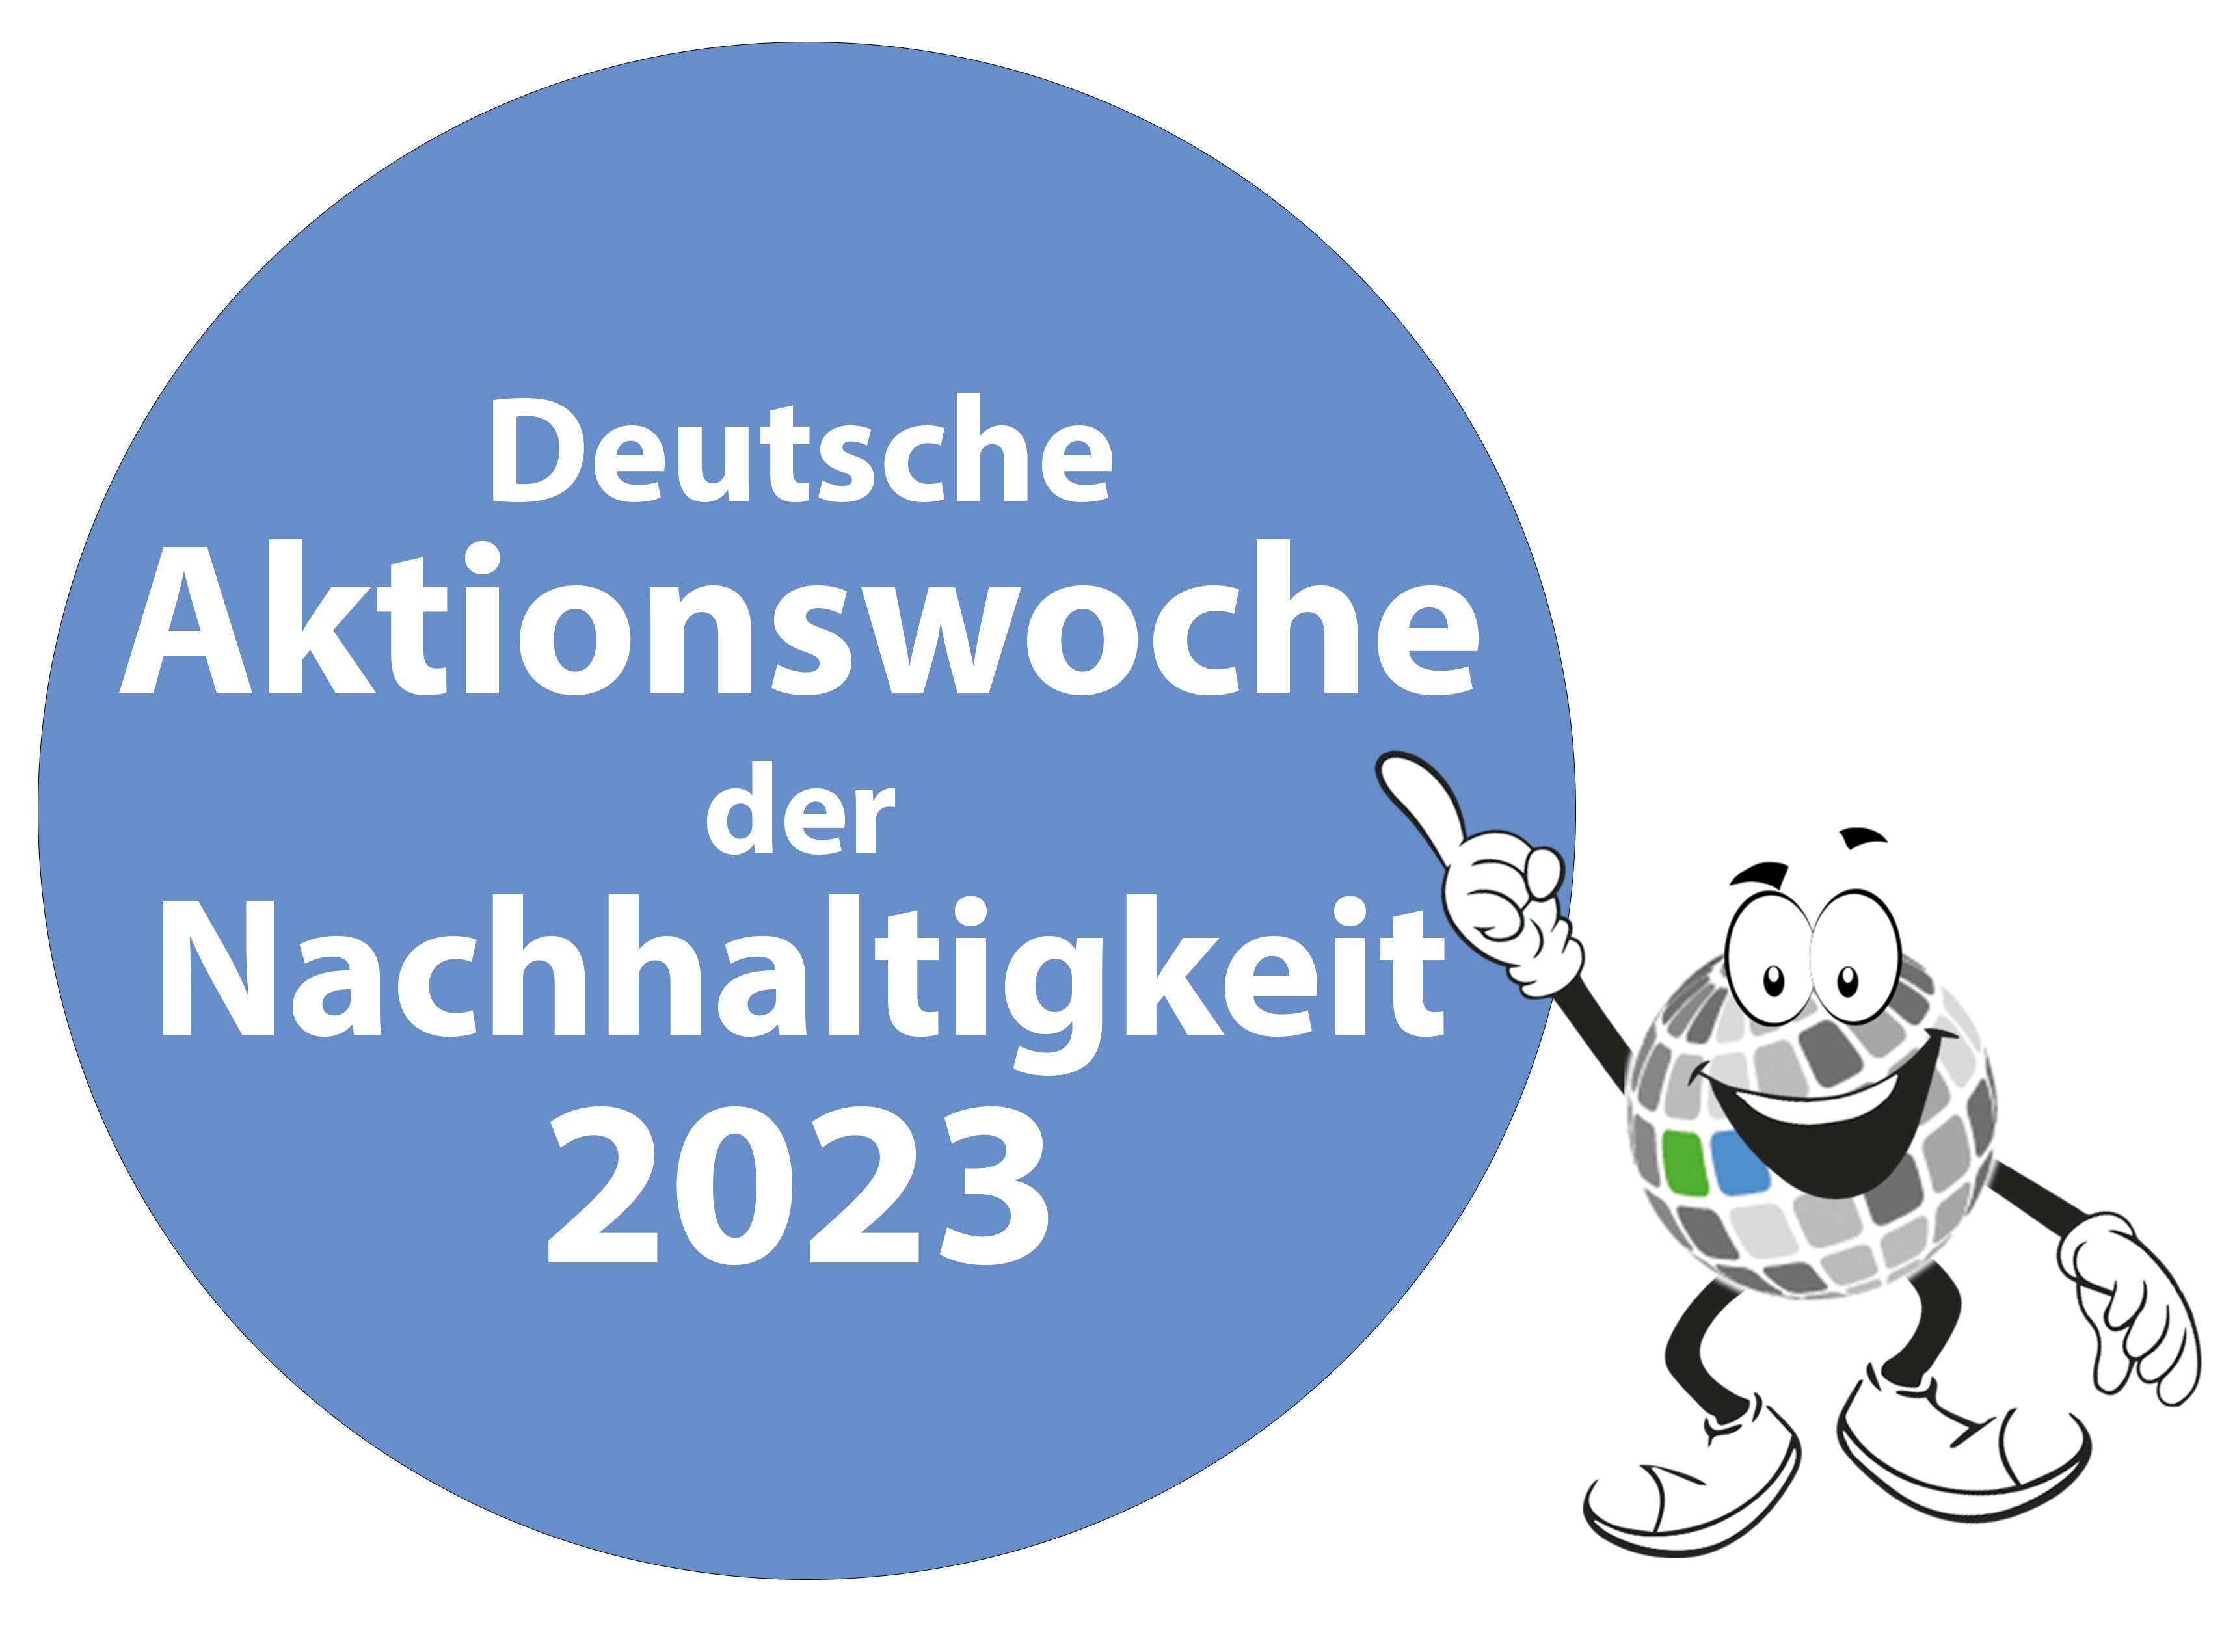 Deutsche Aktionstage Nachhaltigkeit 2023